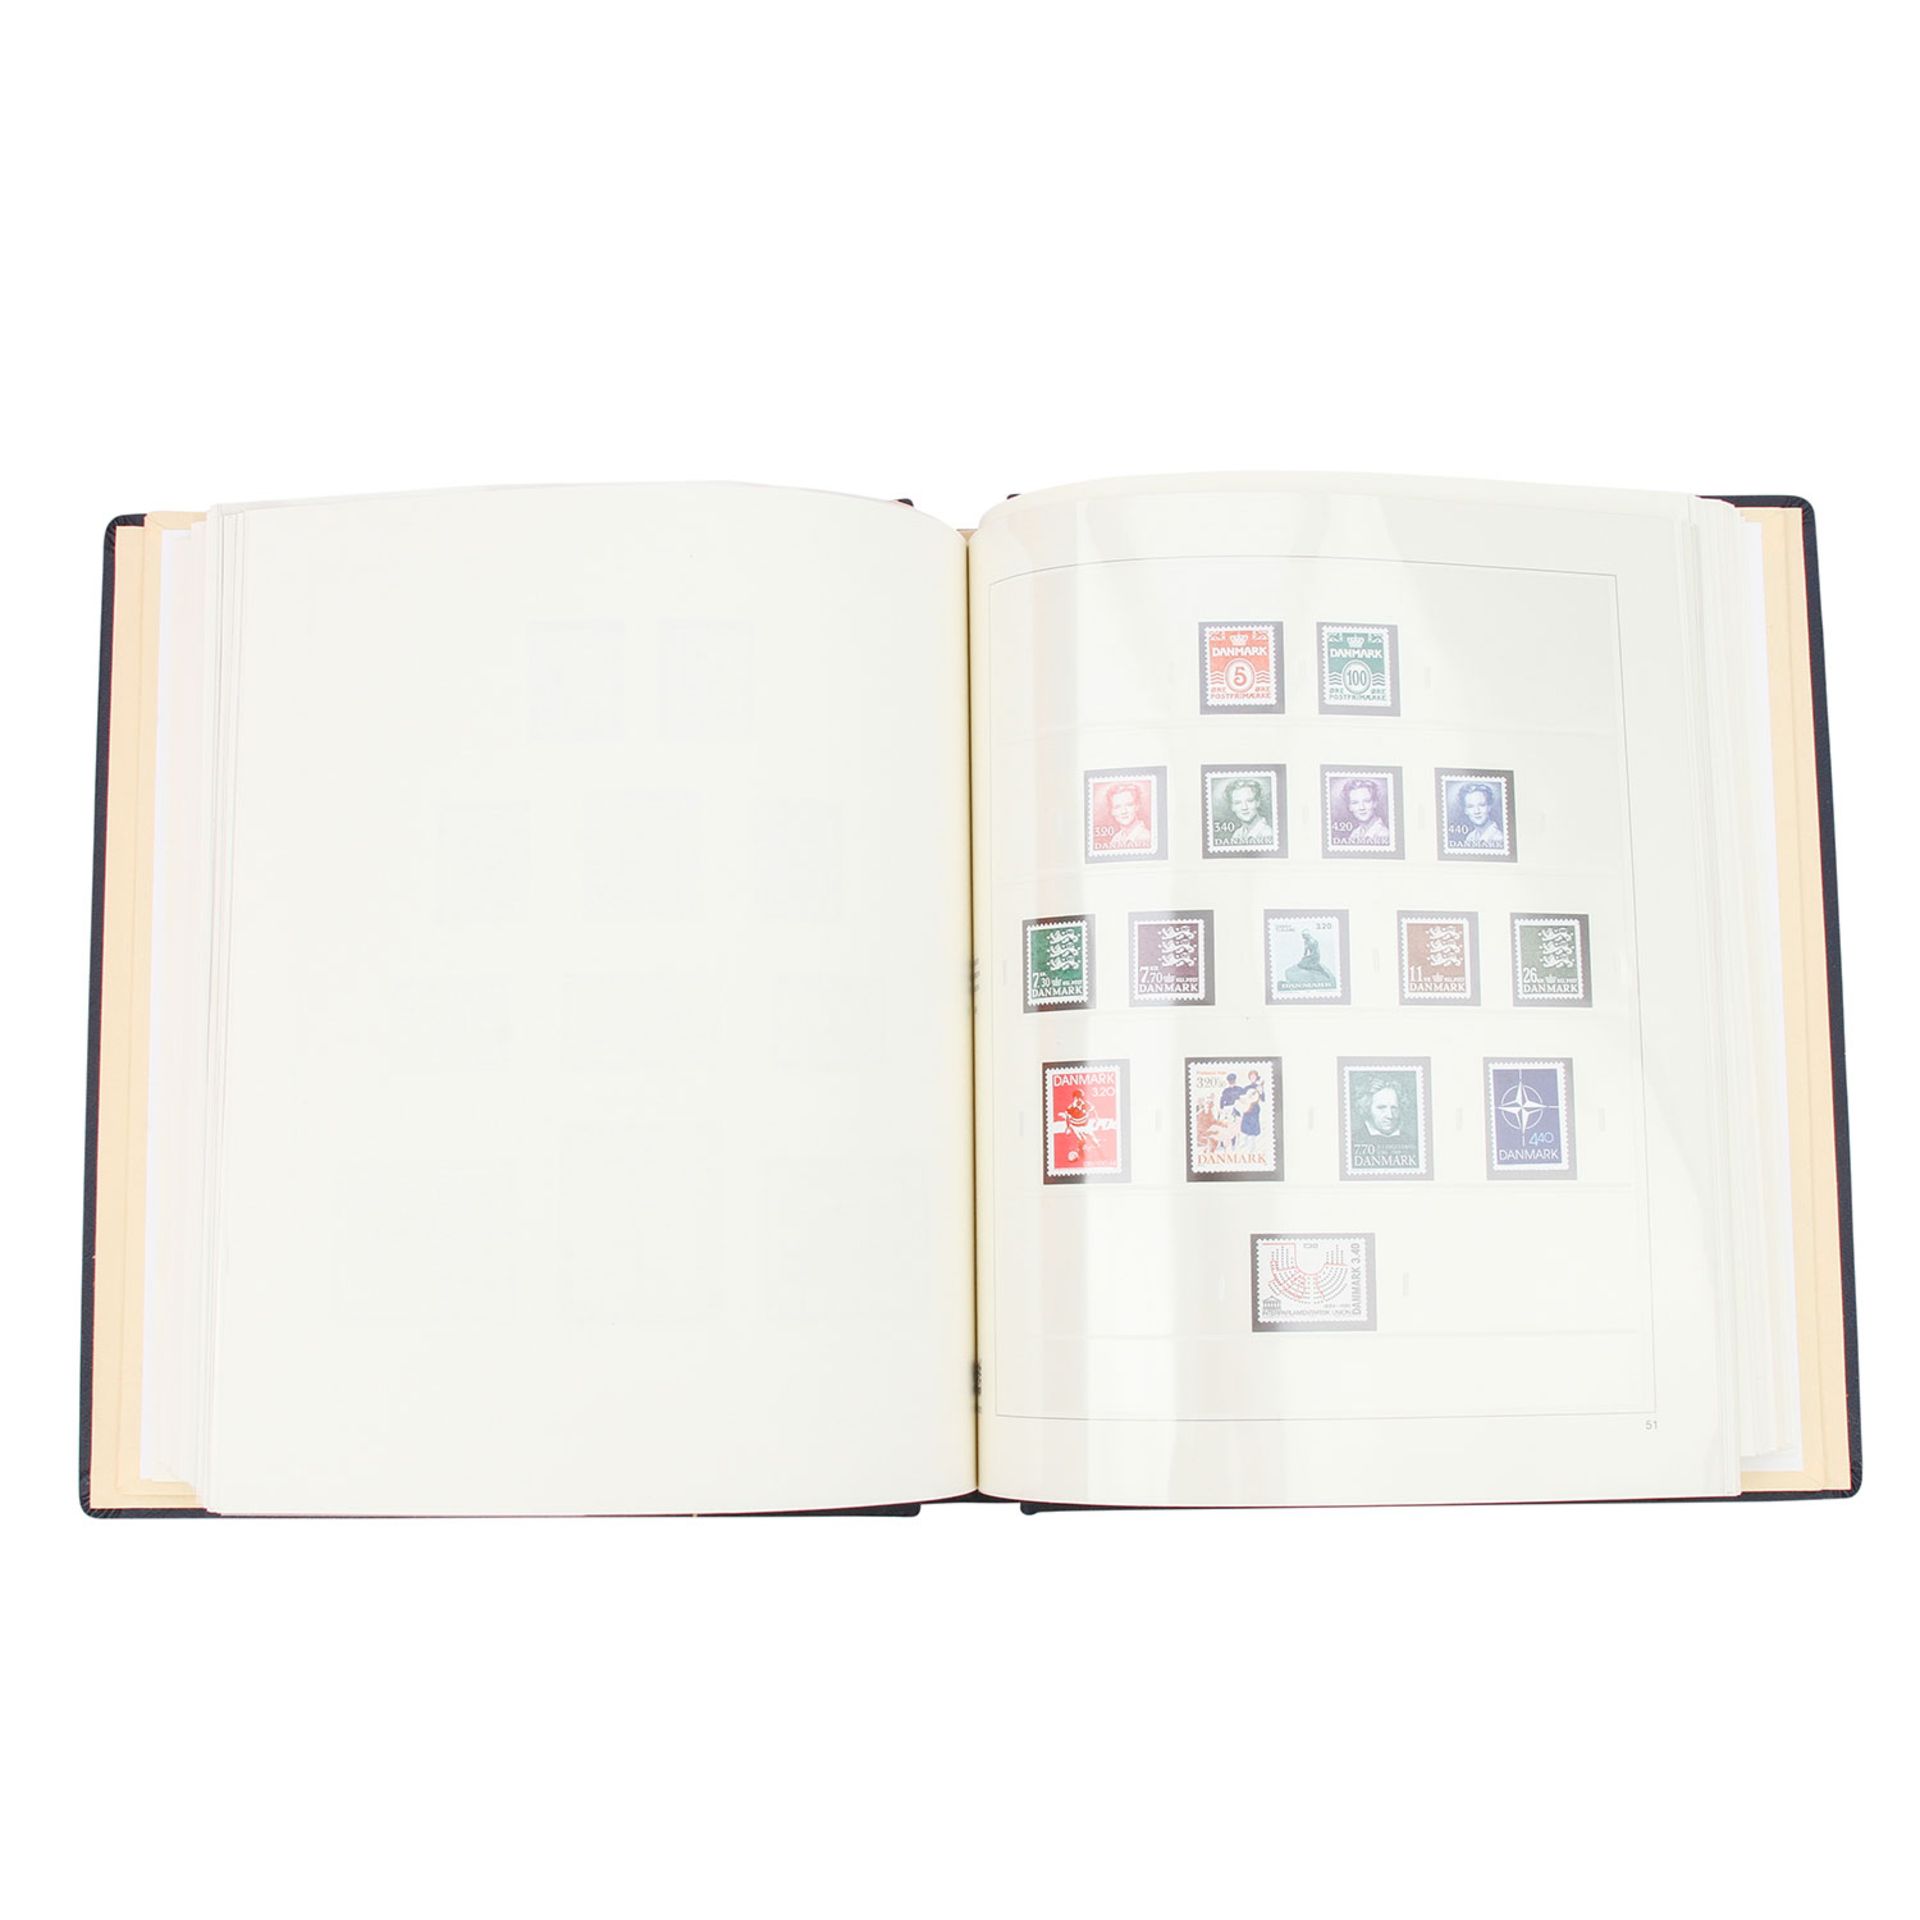 Dänemark, Färöer Inseln – Komplette postfrische Sammlung,Dänemark von 1945-1993, weiterhin Färöer